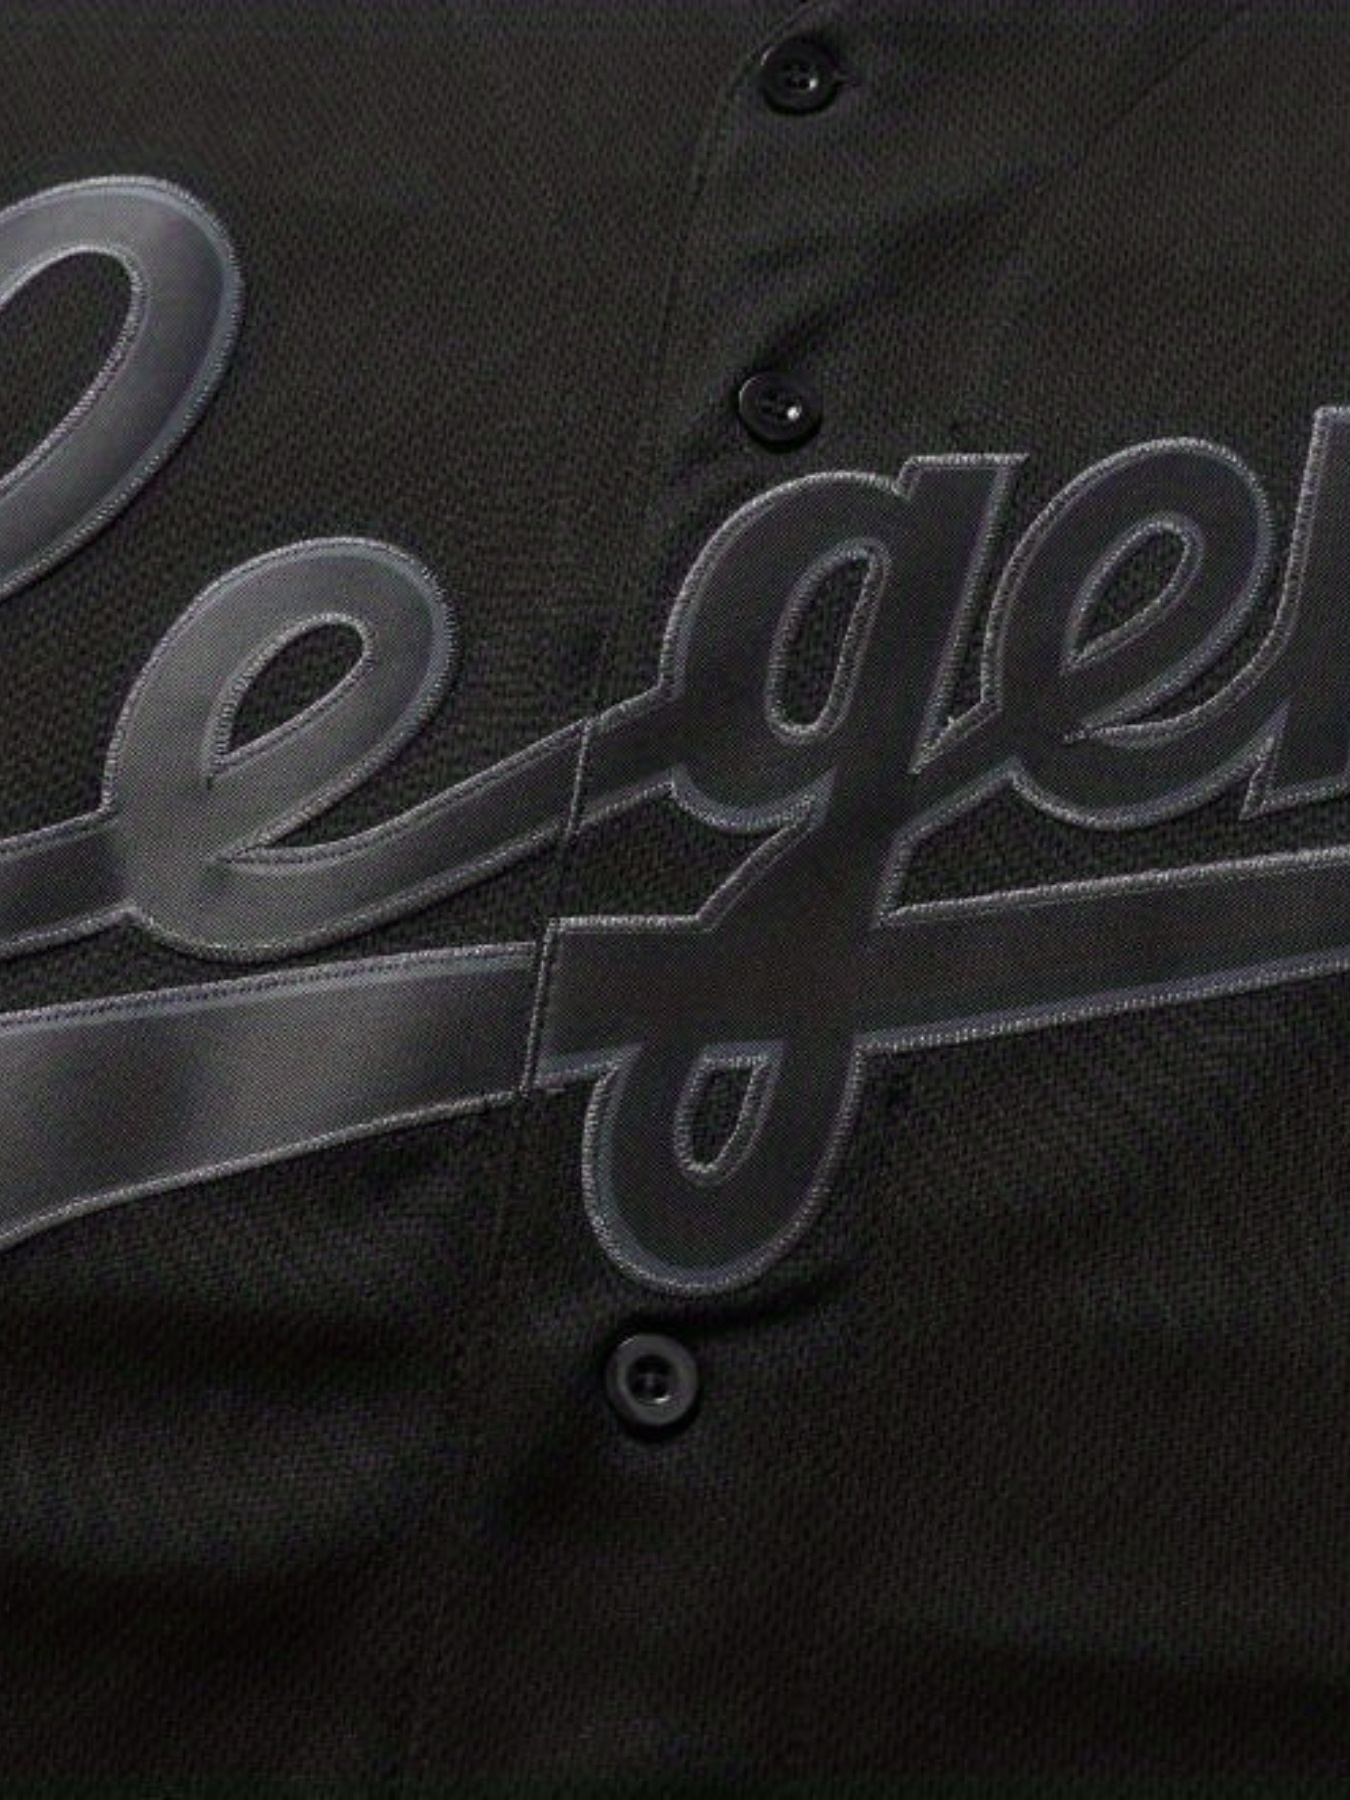 Mens 8 24 Legend Baseball Jersey Classic Design Button Up Short